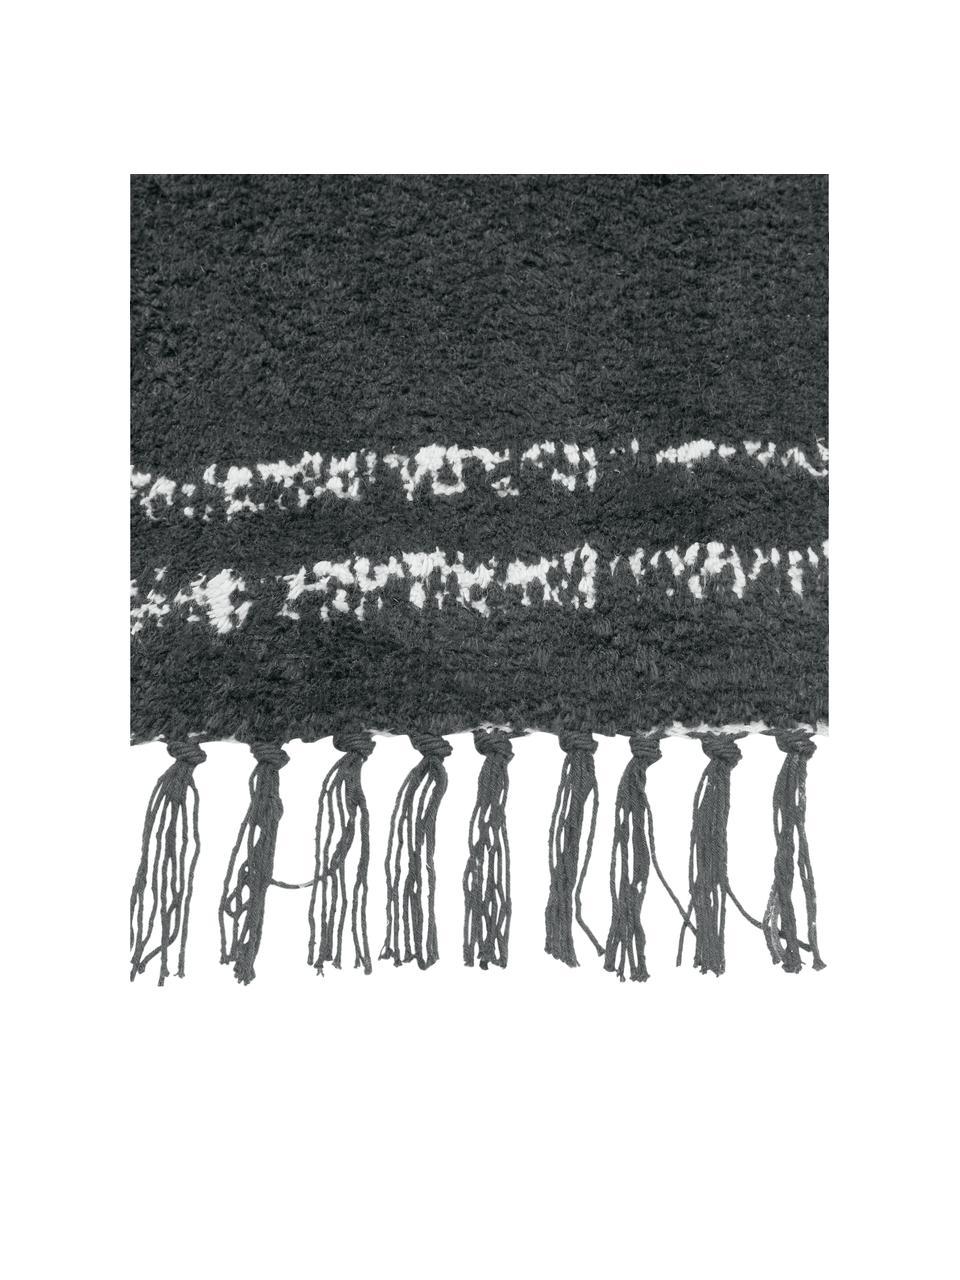 Handgetufteter Baumwollteppich Asisa mit Zickzack-Muster und Fransen, Anthrazit, B 200 x L 300 cm (Größe L)